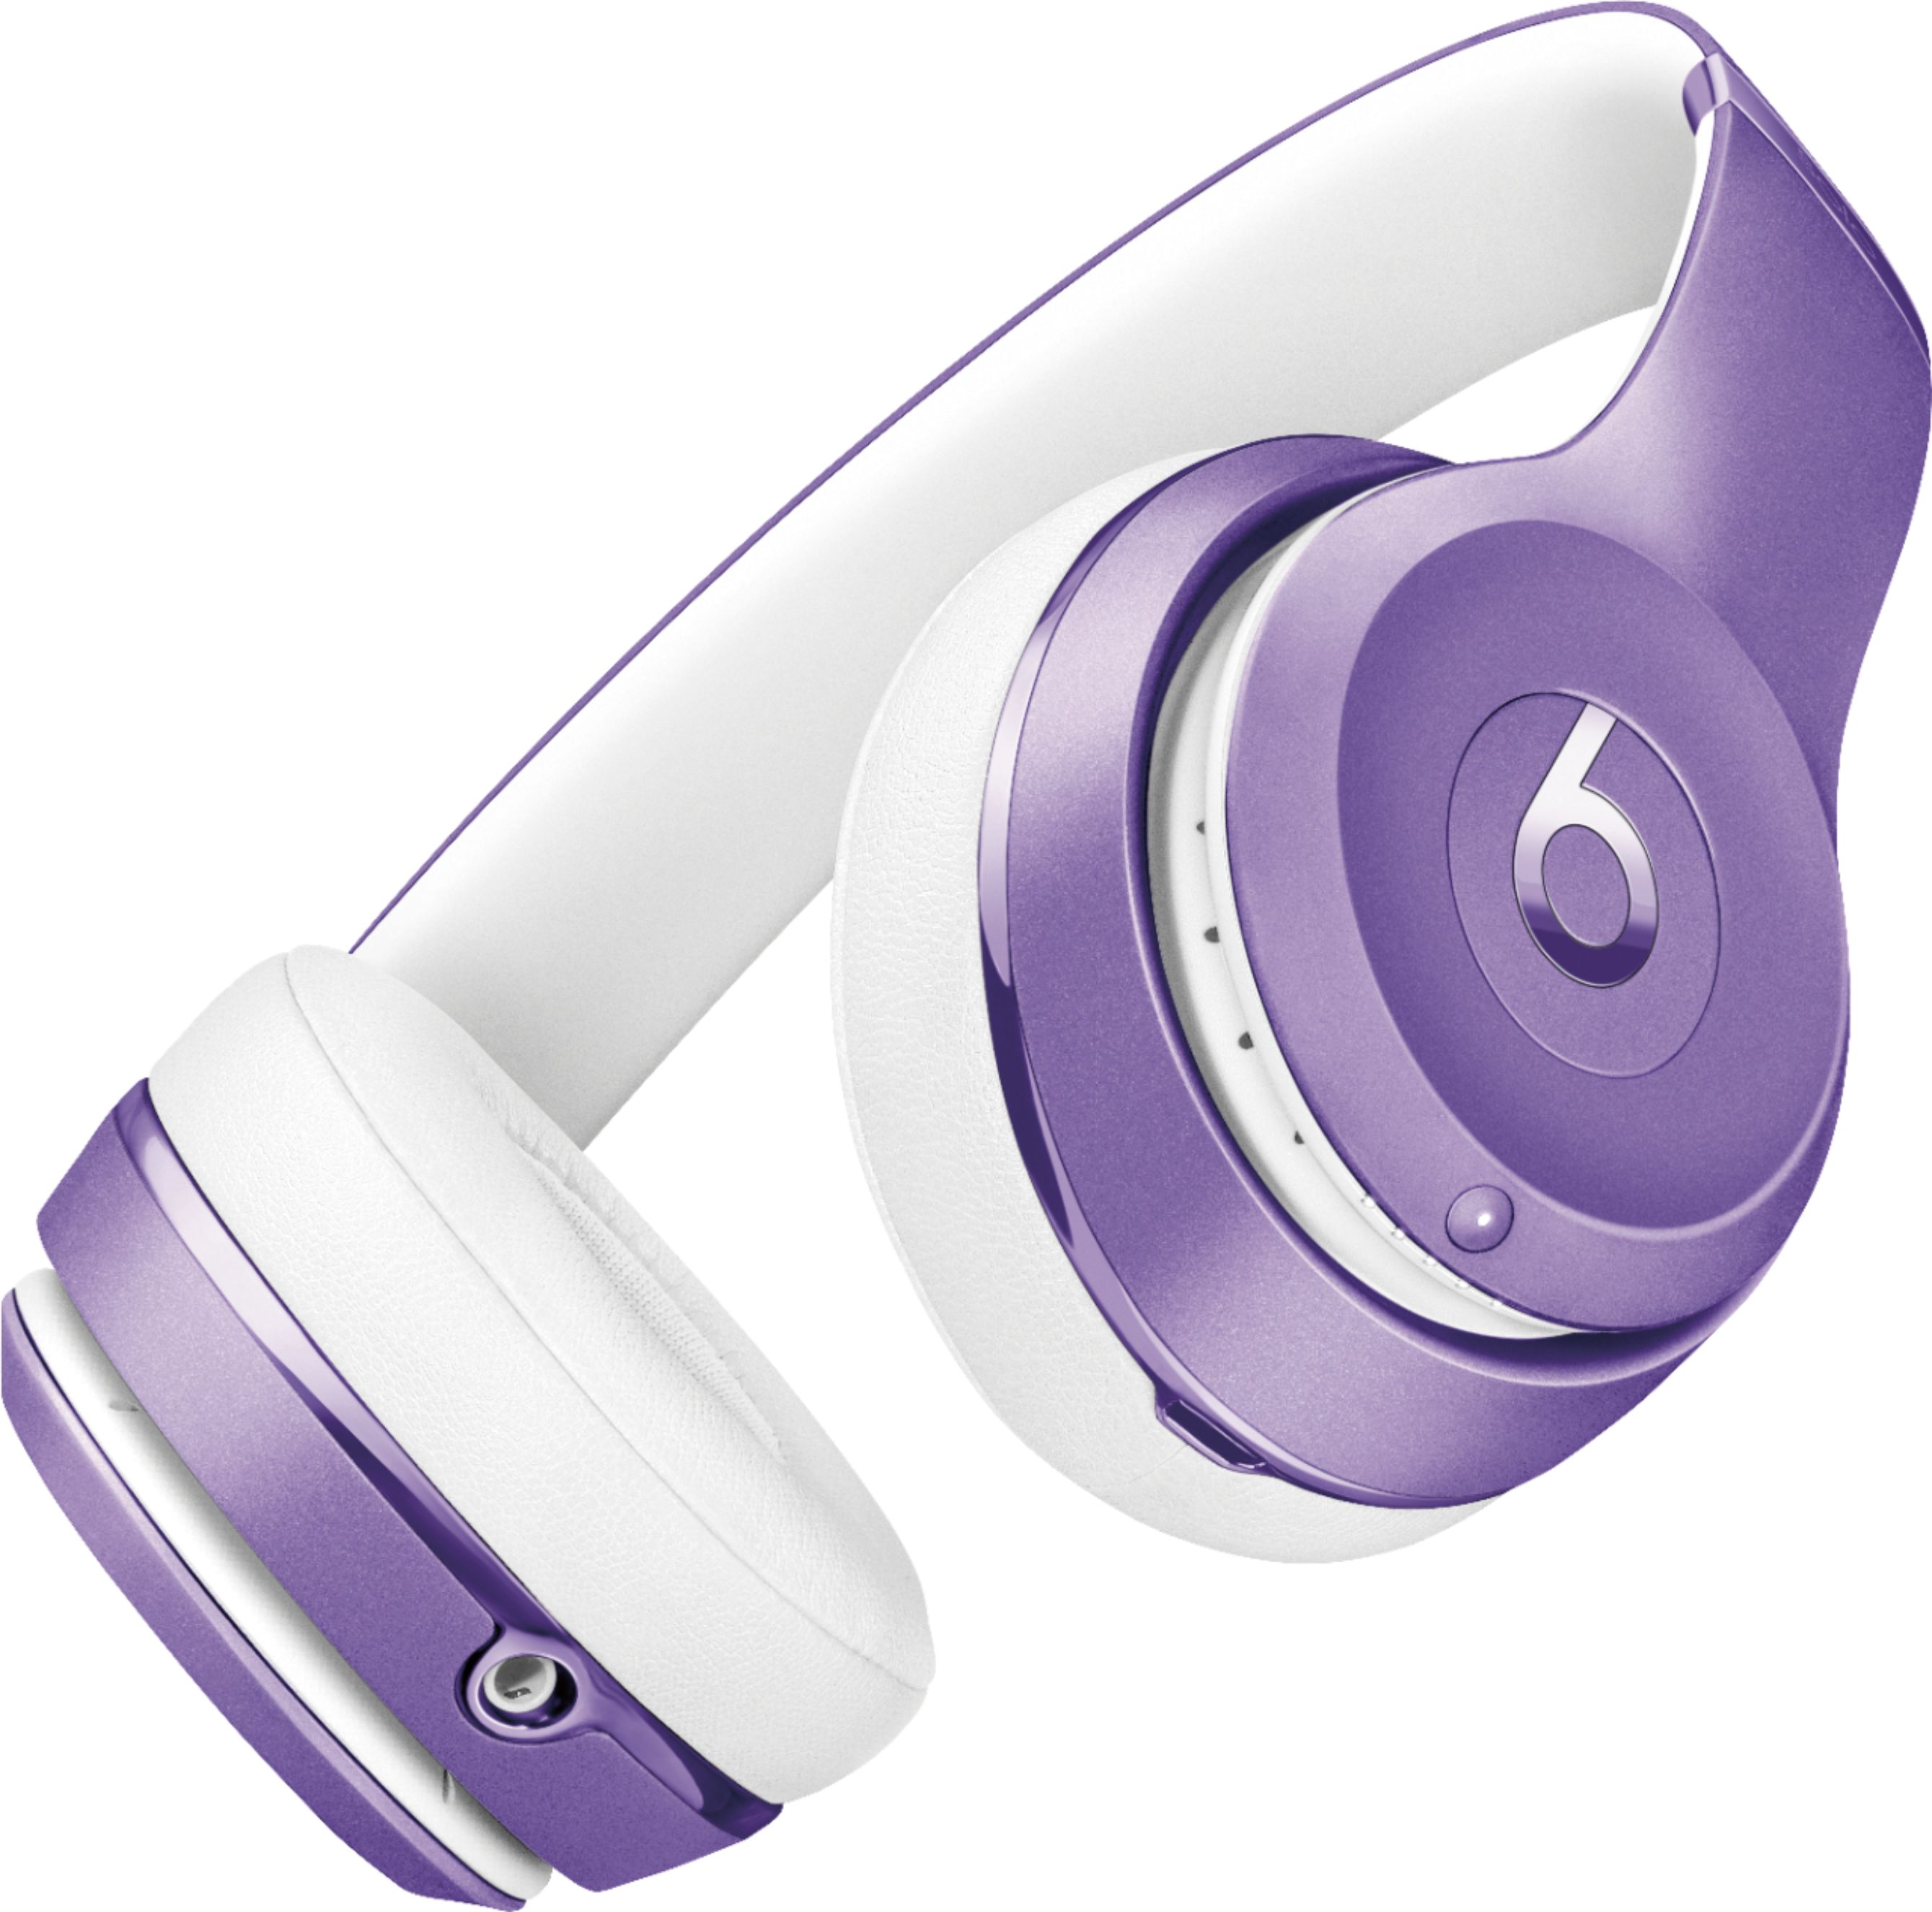 Gezicht omhoog Uitgebreid Ontleden Best Buy: Beats by Dr. Dre Beats Solo³ Wireless Headphones Ultra Violet  Collection Ultra Violet Collection MP132LL/A